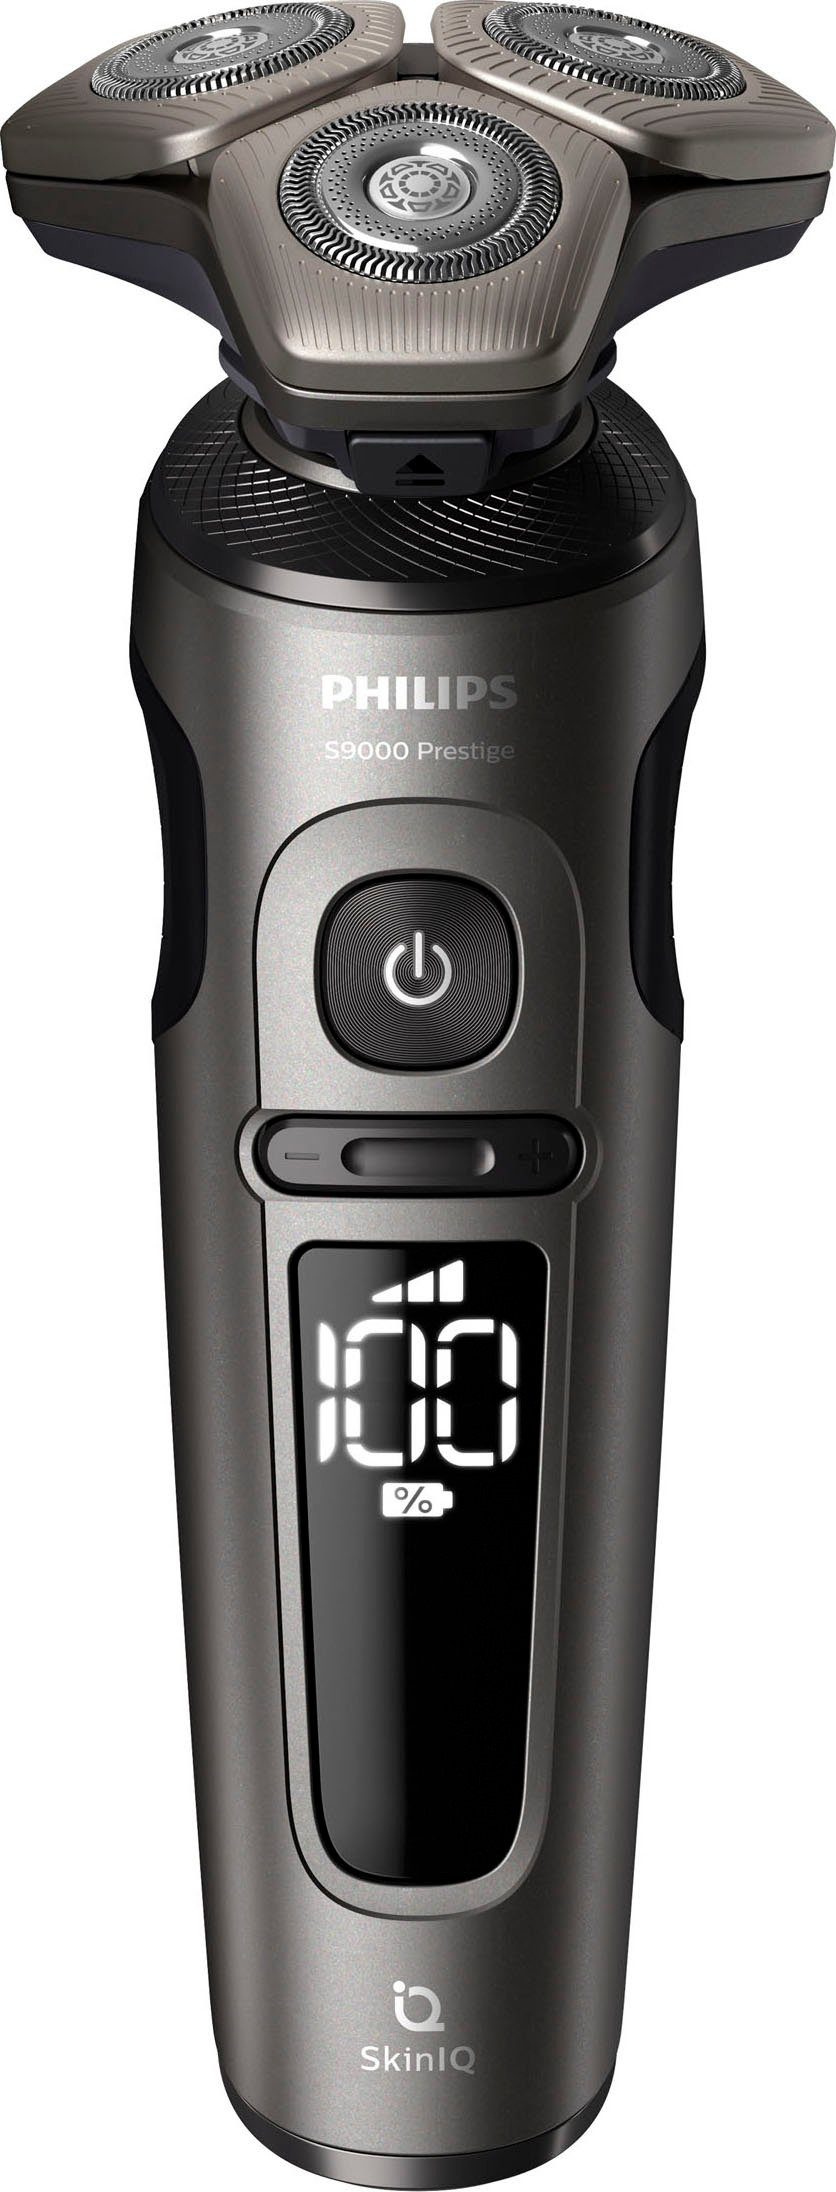 Etui, Series 2, SP9872/15, Technologie SkinIQ 9000 Philips Prestige Elektrorasierer mit Aufsätze: